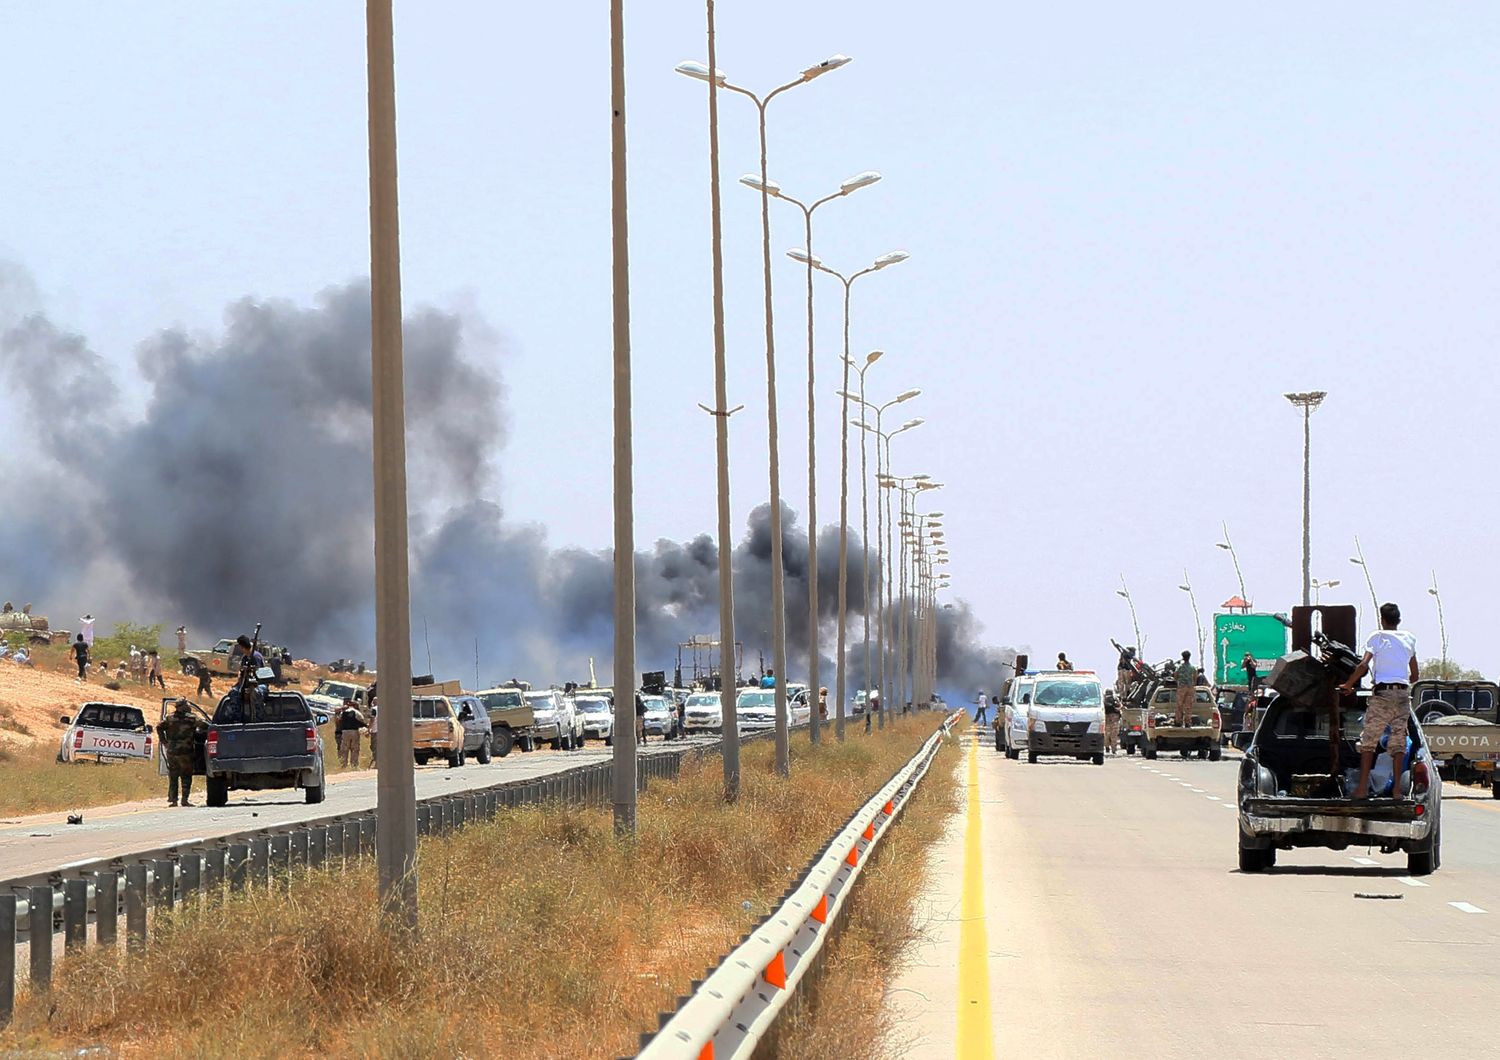 &nbsp; Libia, Sirte, combattimenti contro jiadisti Isisi